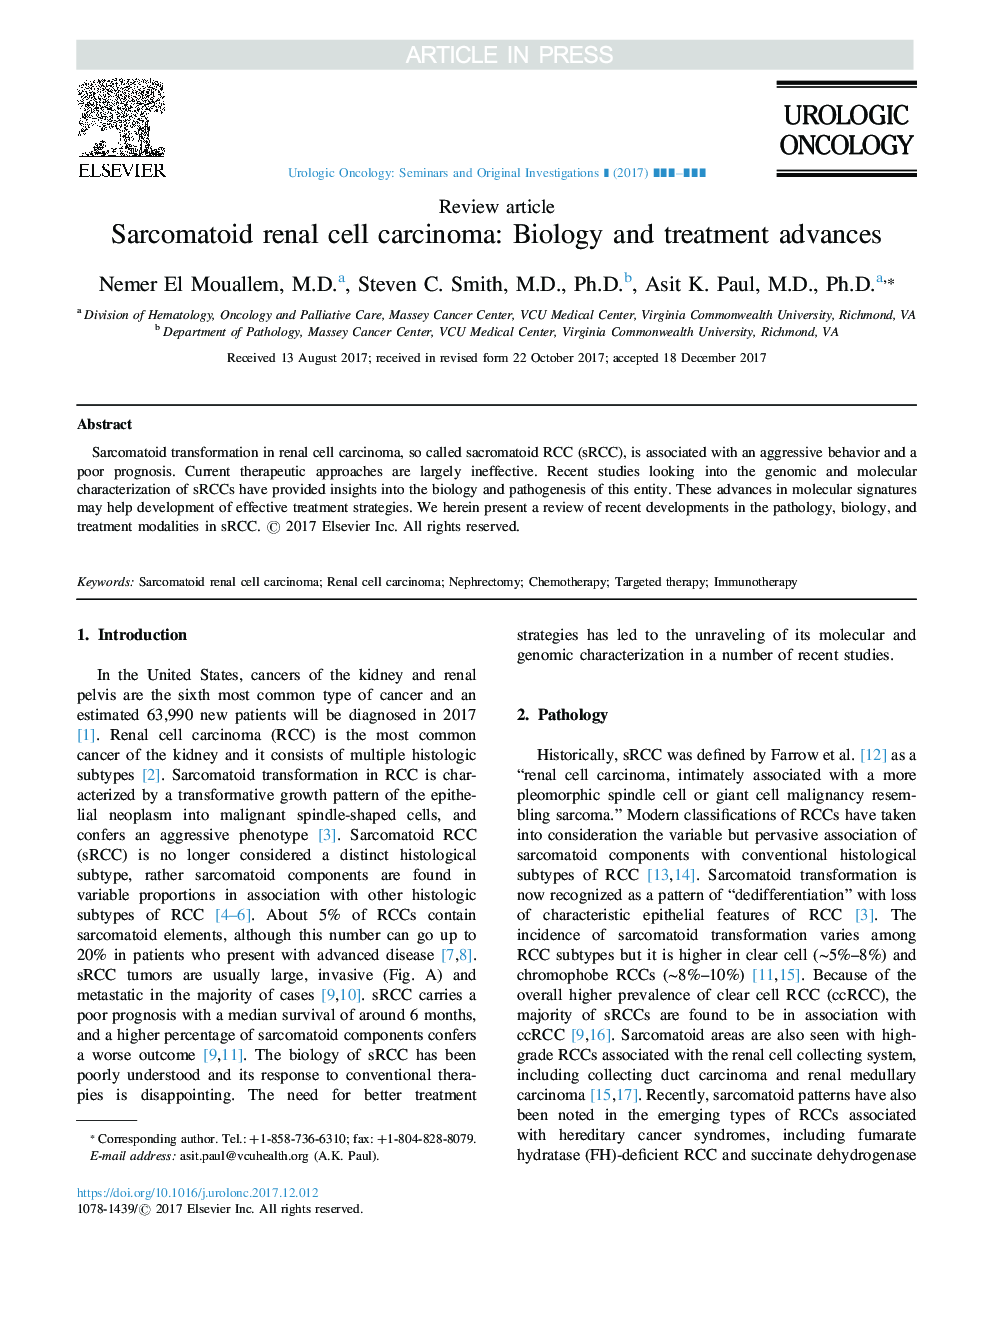 کارسینوم سلول های کلیه سلول های بنیادی: پیشرفت زیست شناسی و درمان 